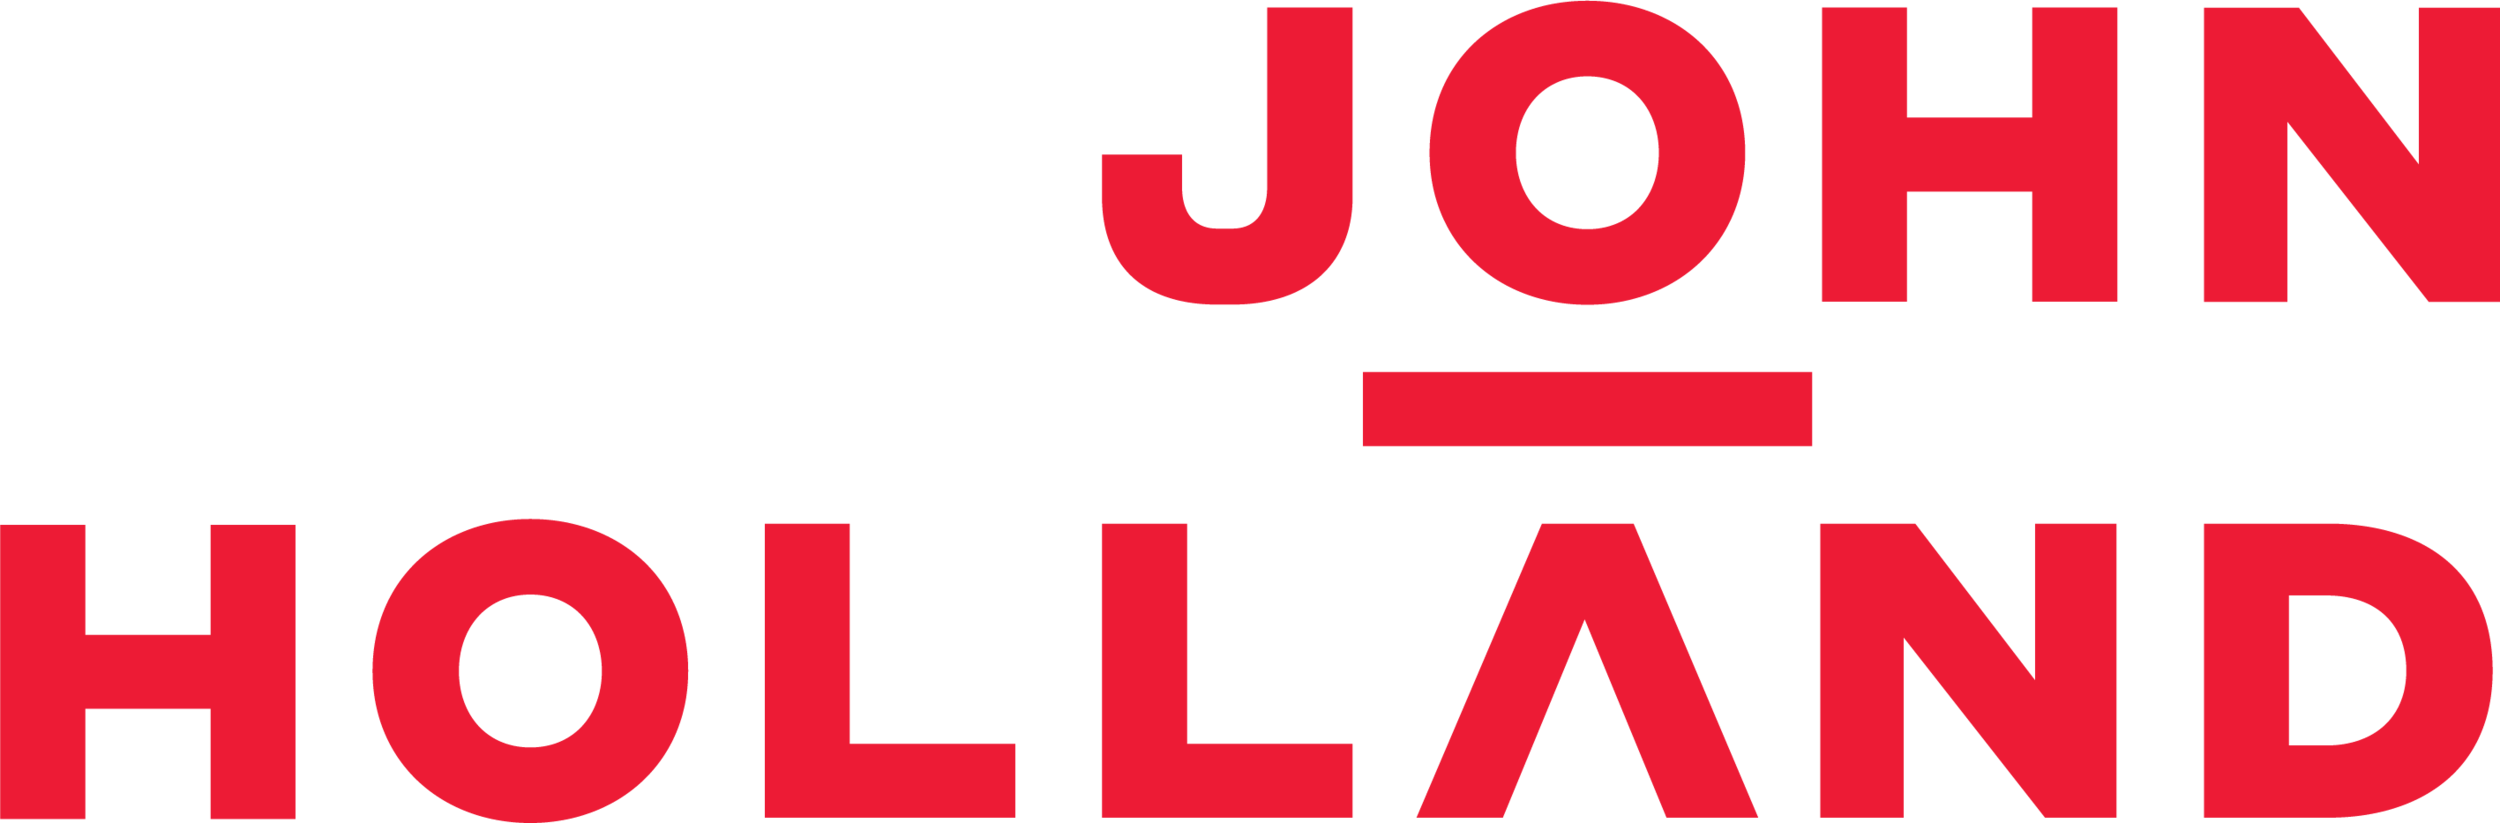 John_Holland_Logo.png